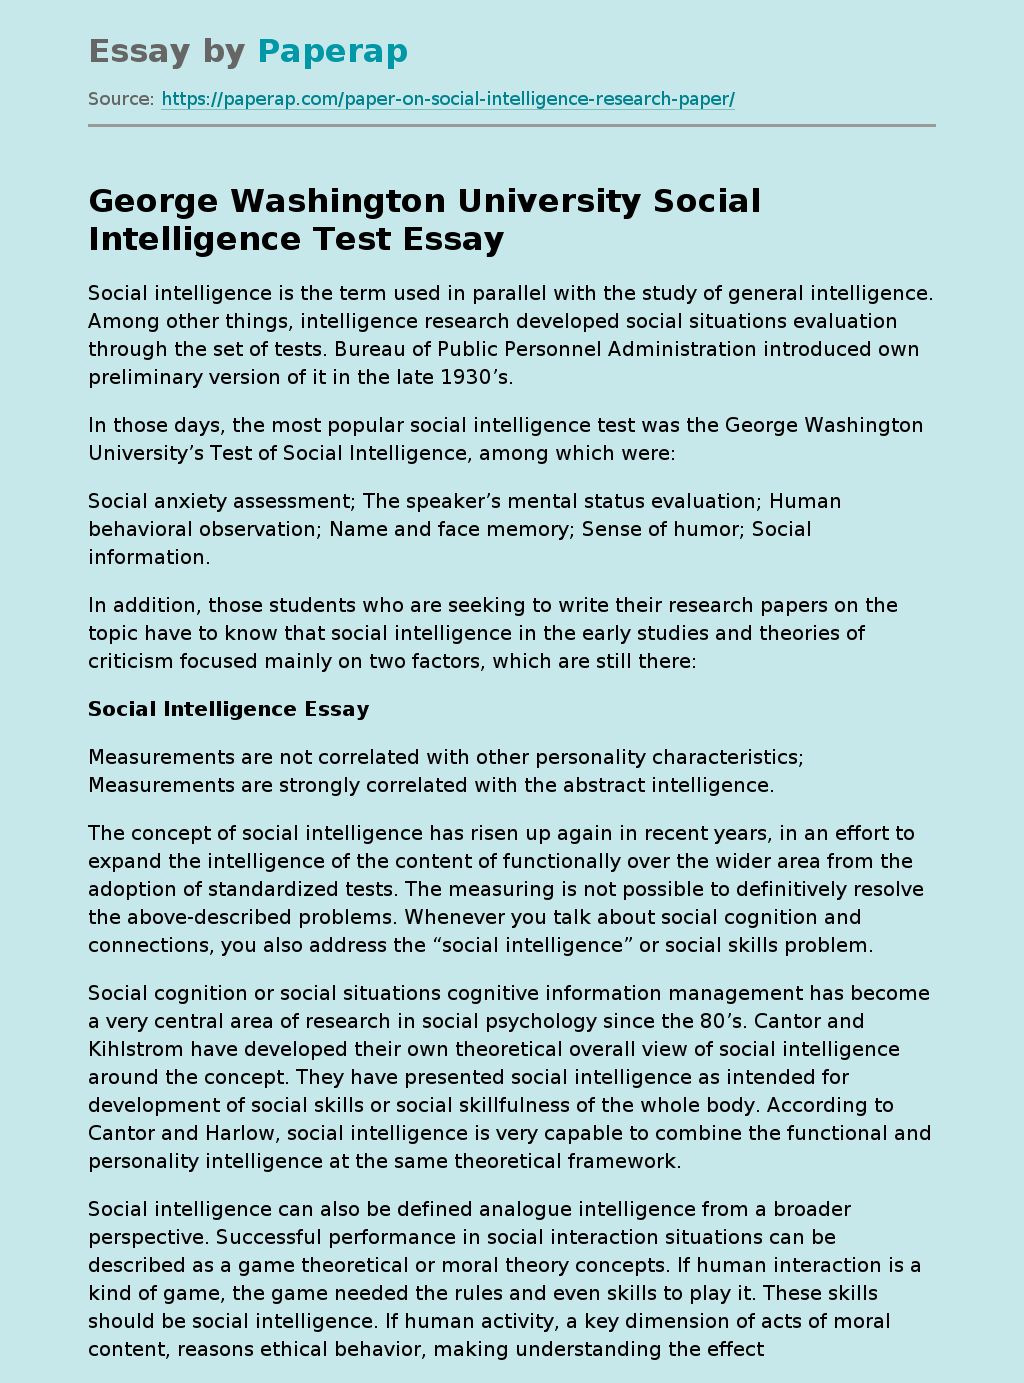 George Washington University Social Intelligence Test